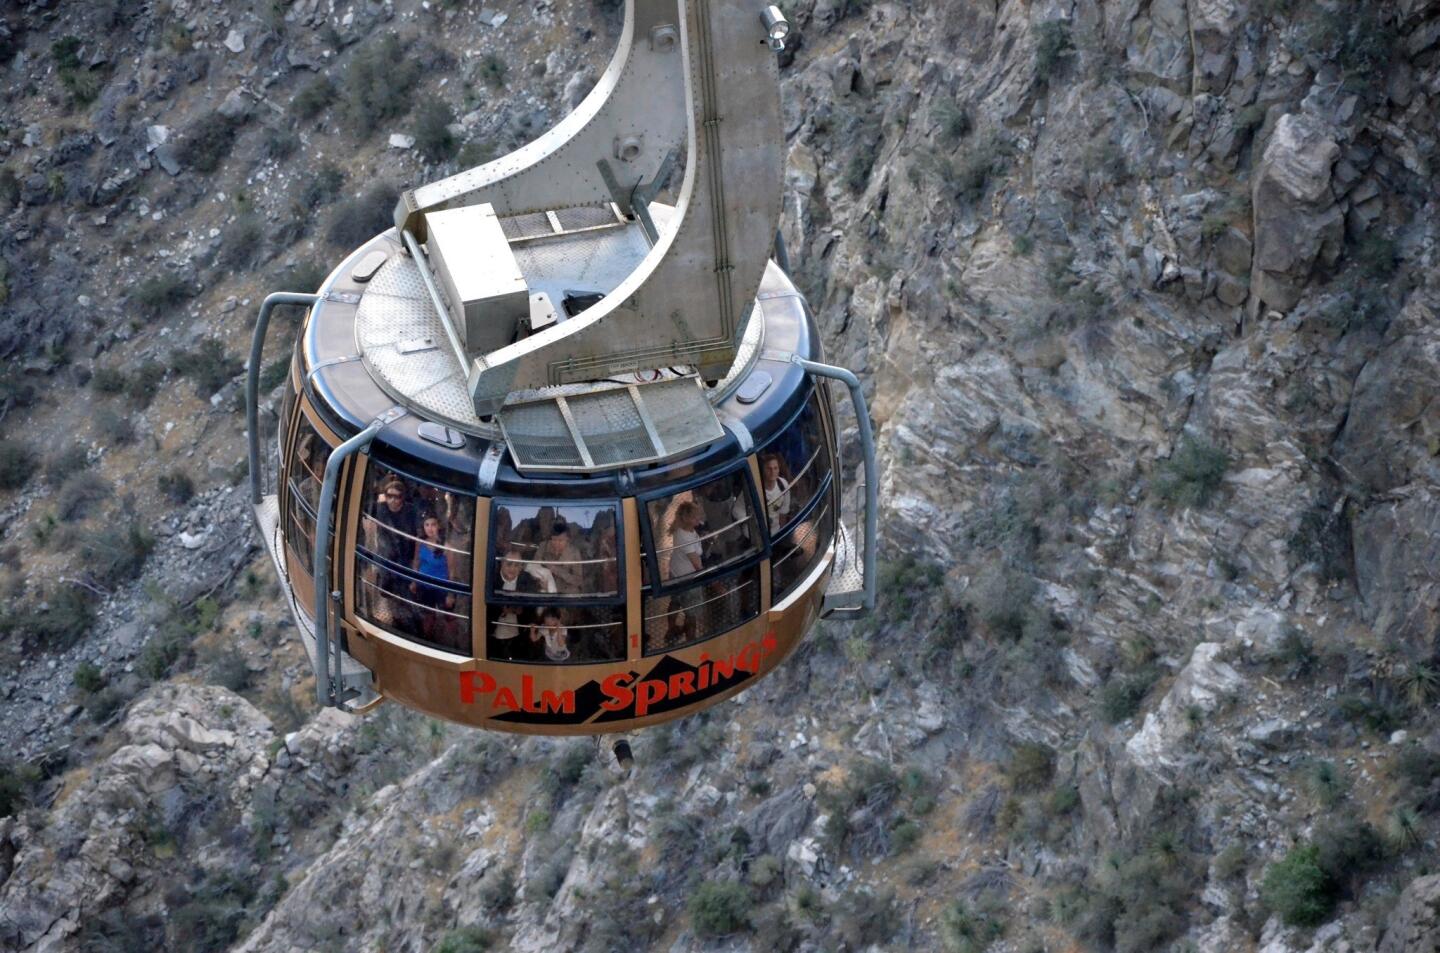 Palm Springs Aerial Tram